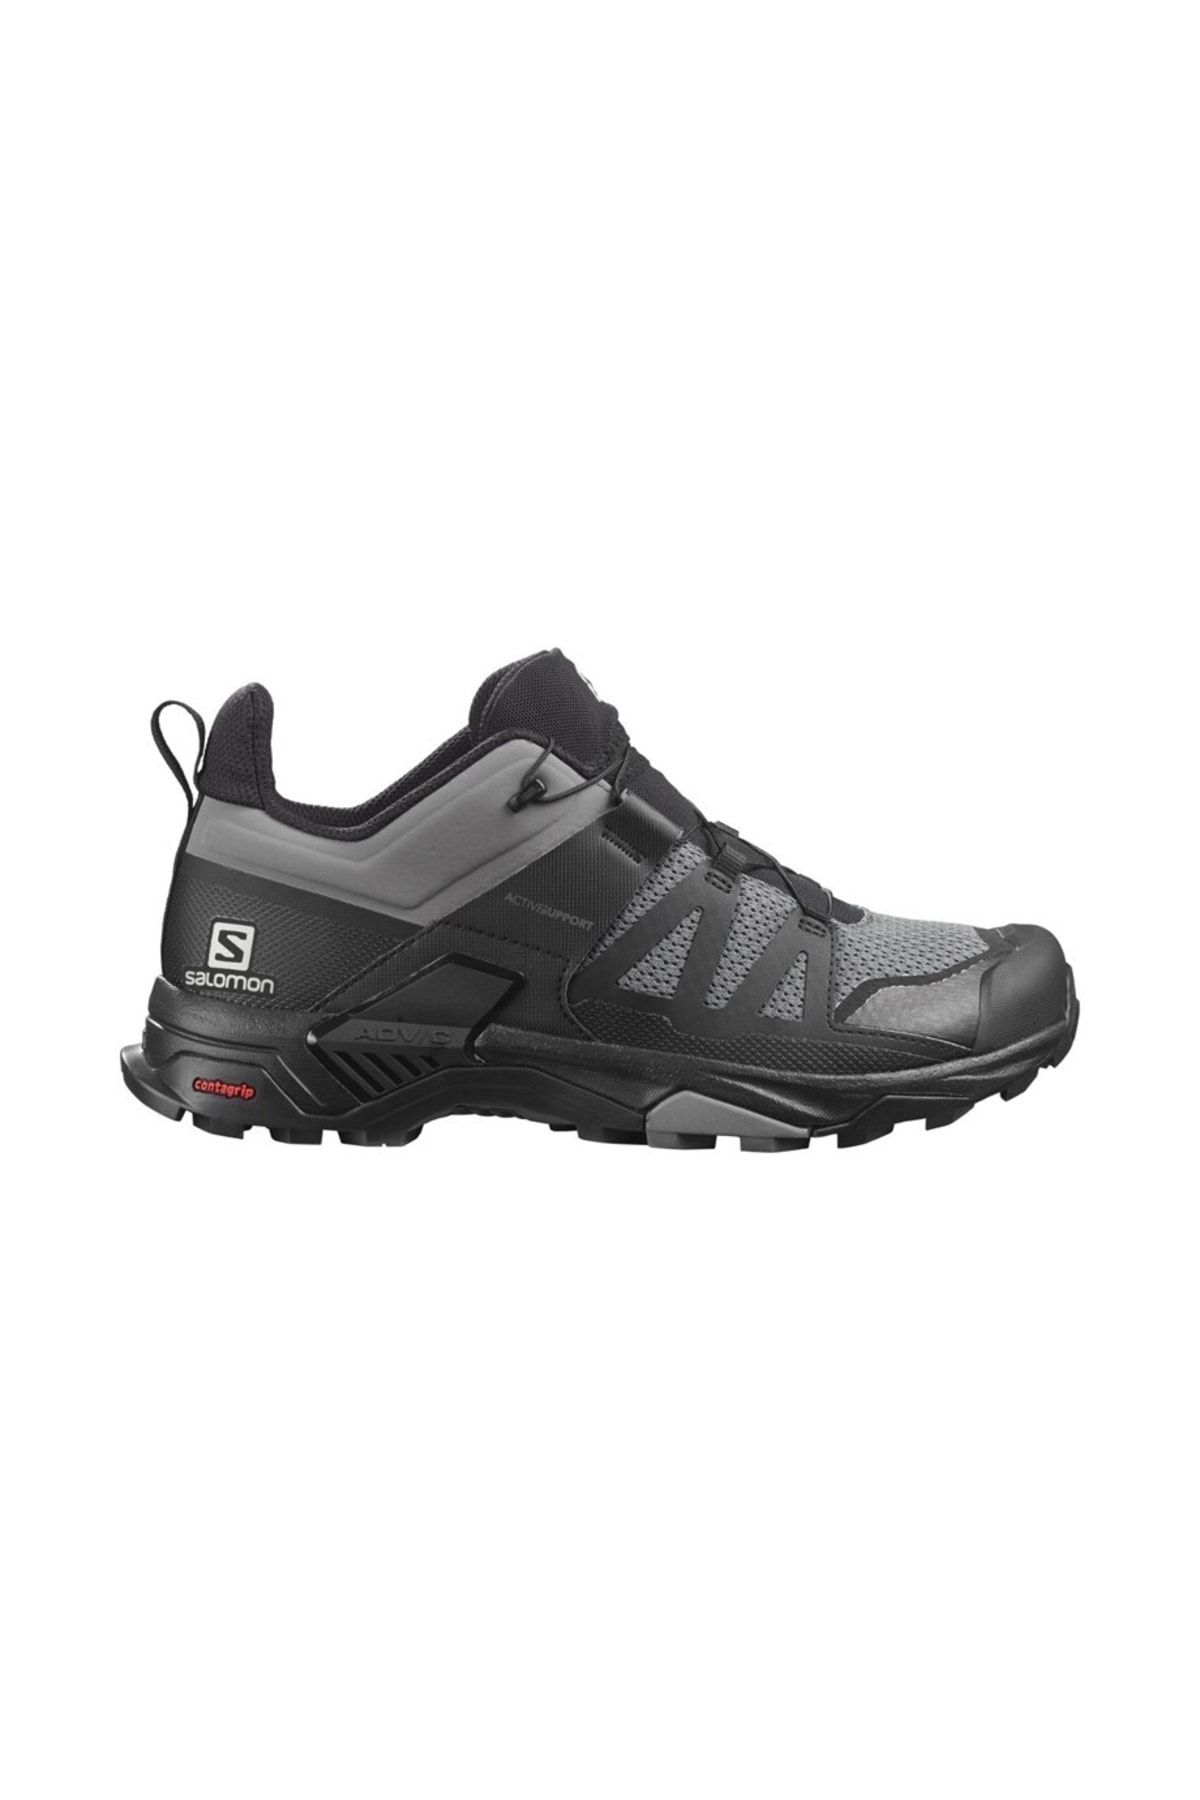 Salomon X Ultra 4 Erkek Çok Renkli Outdoor Ayakkabısı L41385100